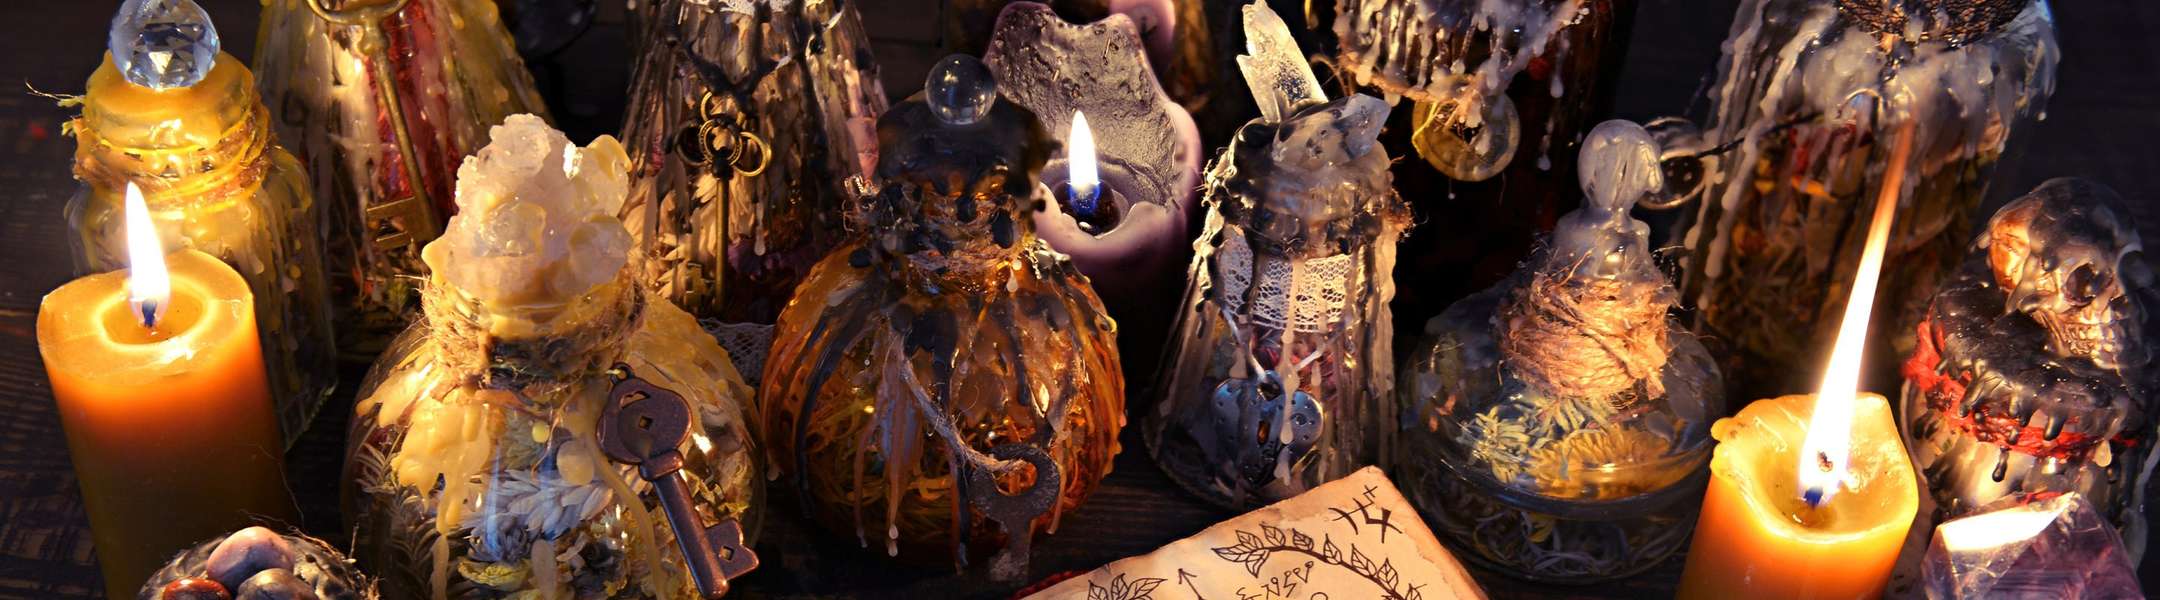 Velas, utilizadas en rituales por brujas reales, algunas de las cuales se pueden encontrar en Salem. Escucharás sobre ellos en este tour.